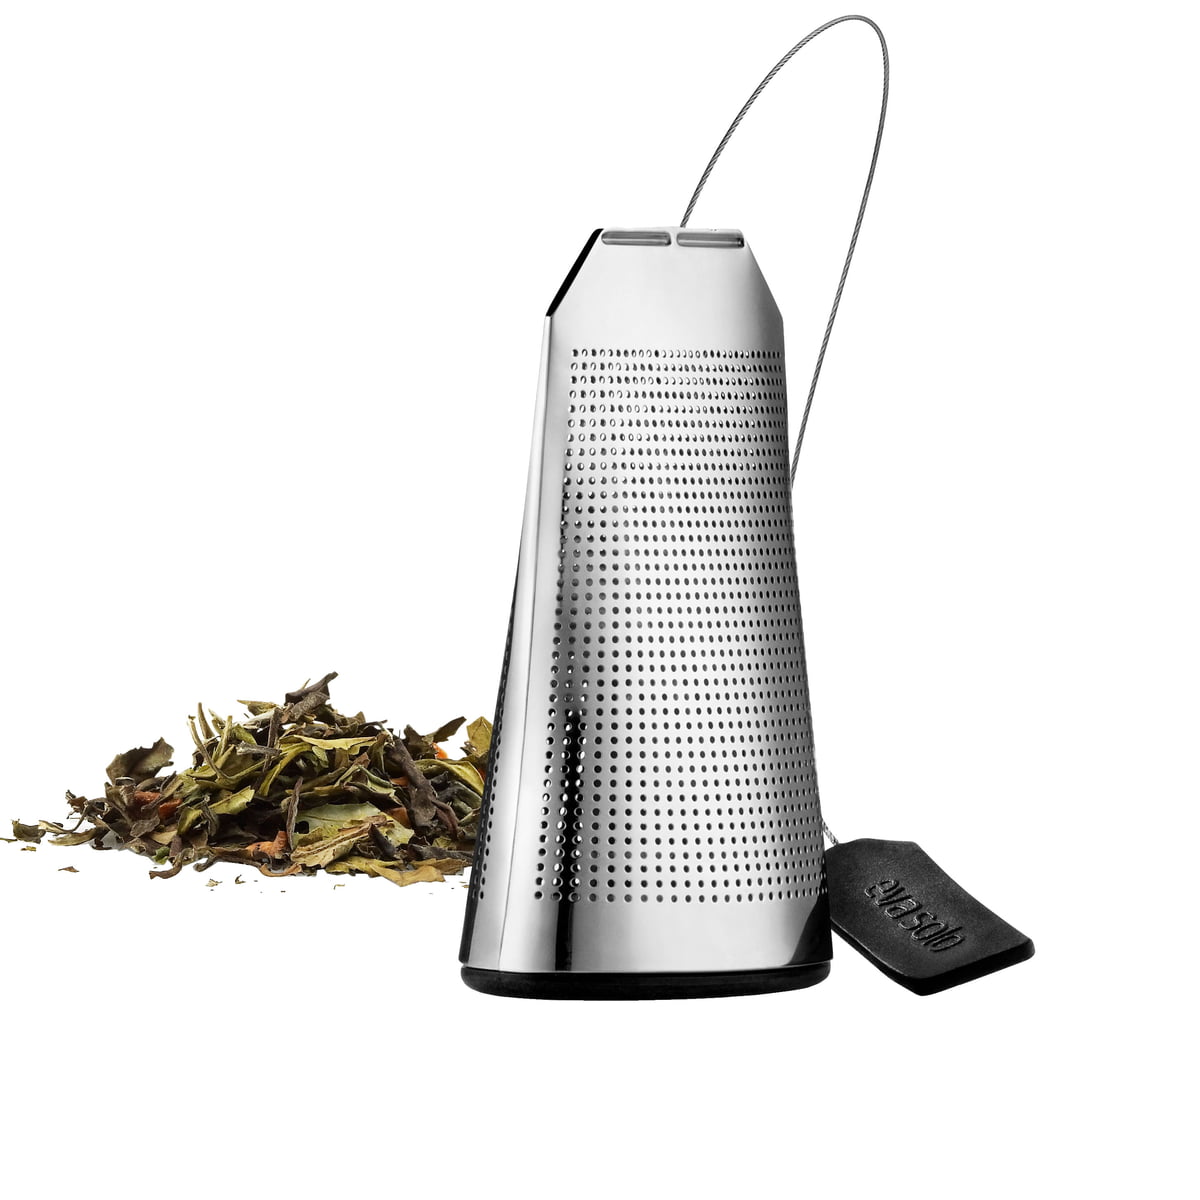 Filtre à thé silicone - Accessoires pour le Thé - Gadgets de Cuisine